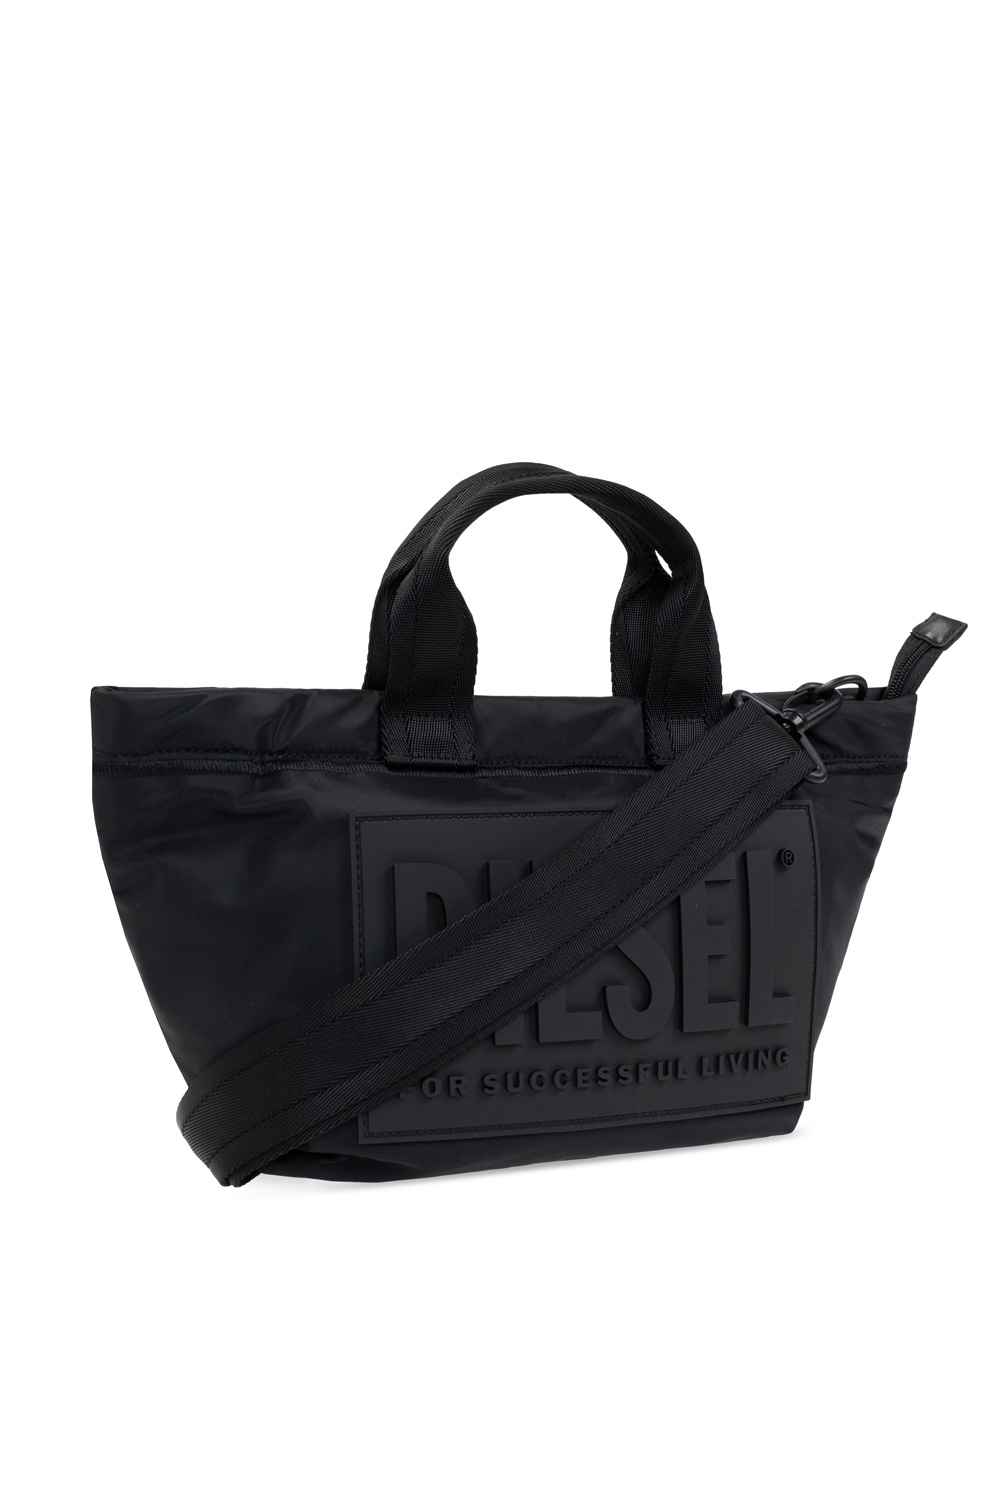 WD6426) OEM/ODM Handbags Wholesale Tote Bag Hot Sale Shoulder Bag